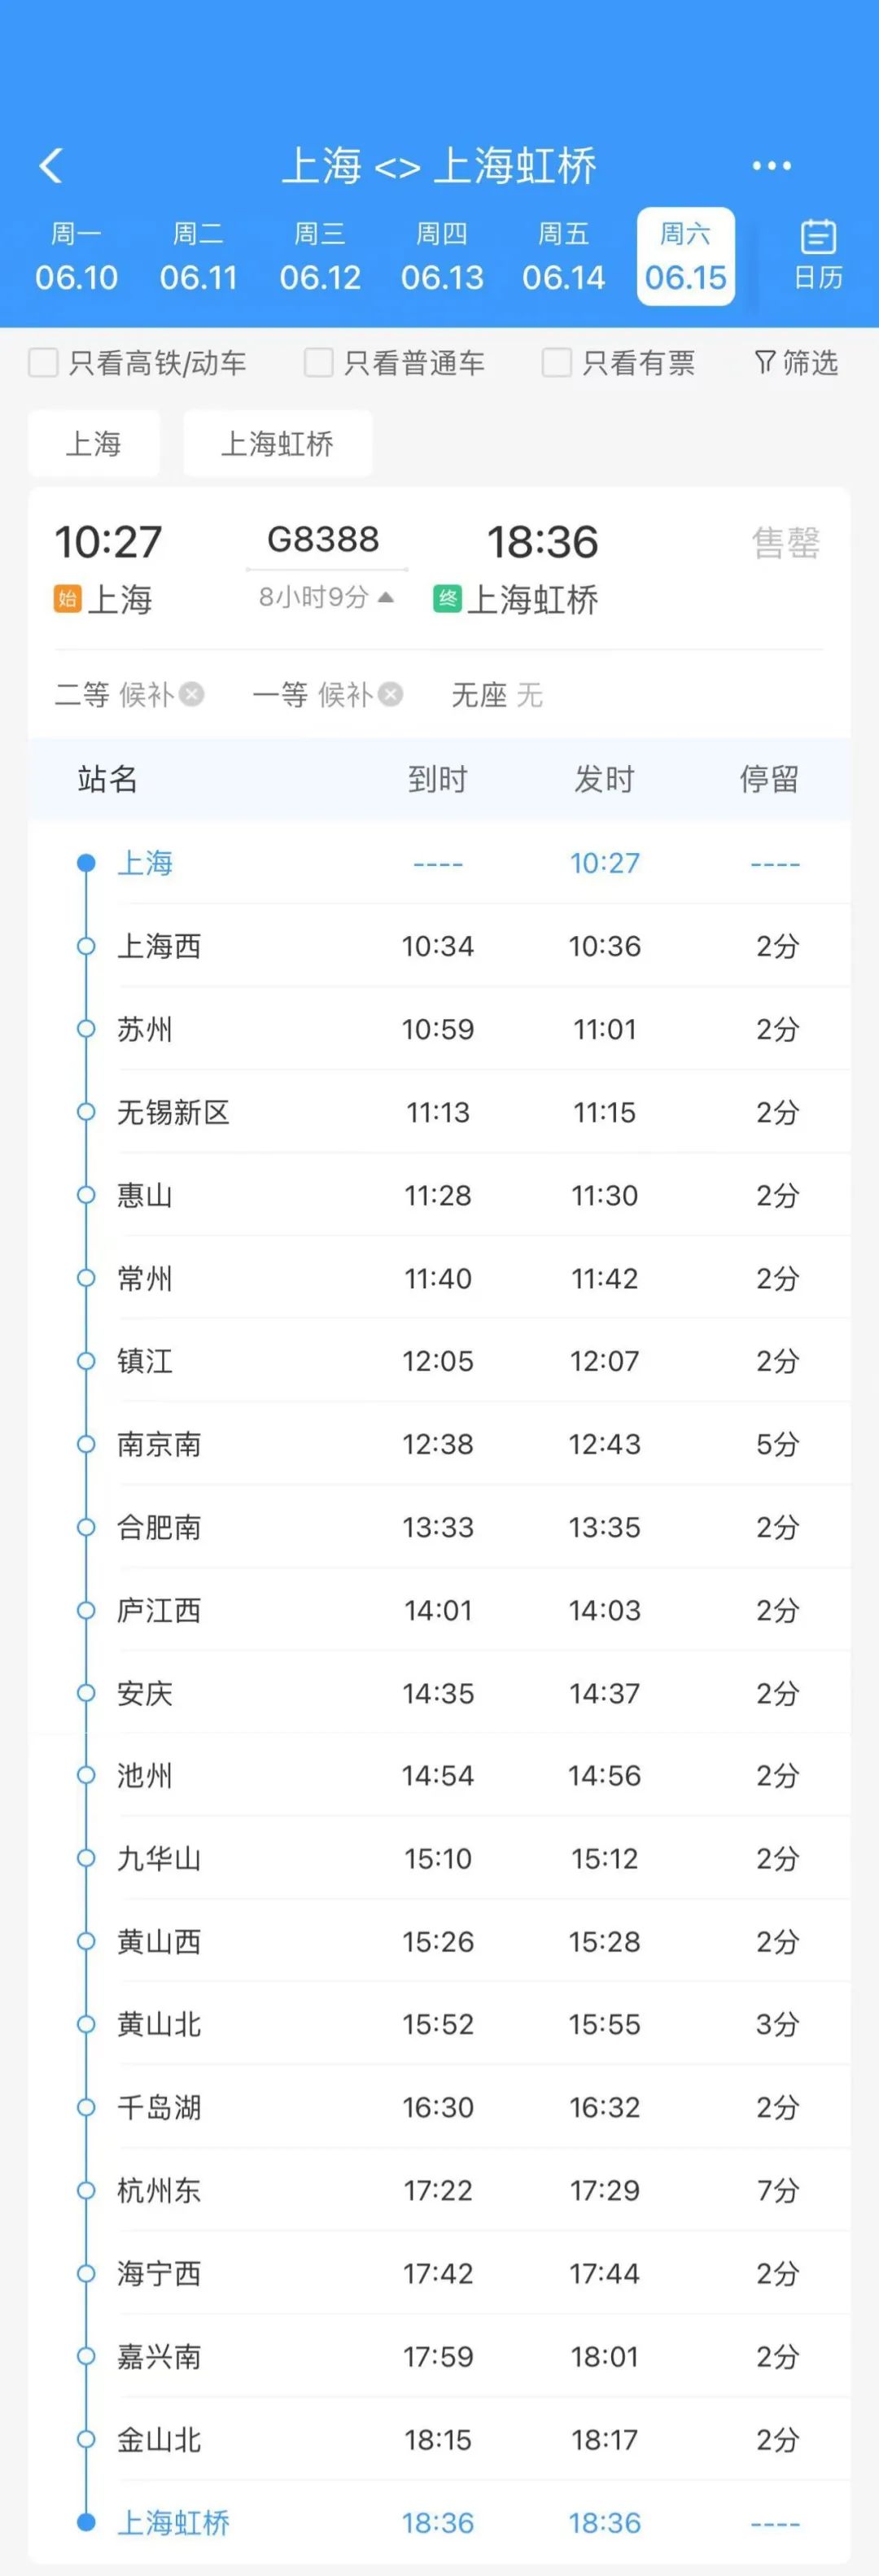 列车沿途停靠上海站,上海西站,苏州站,无锡新区站,惠山站,常州站,镇江